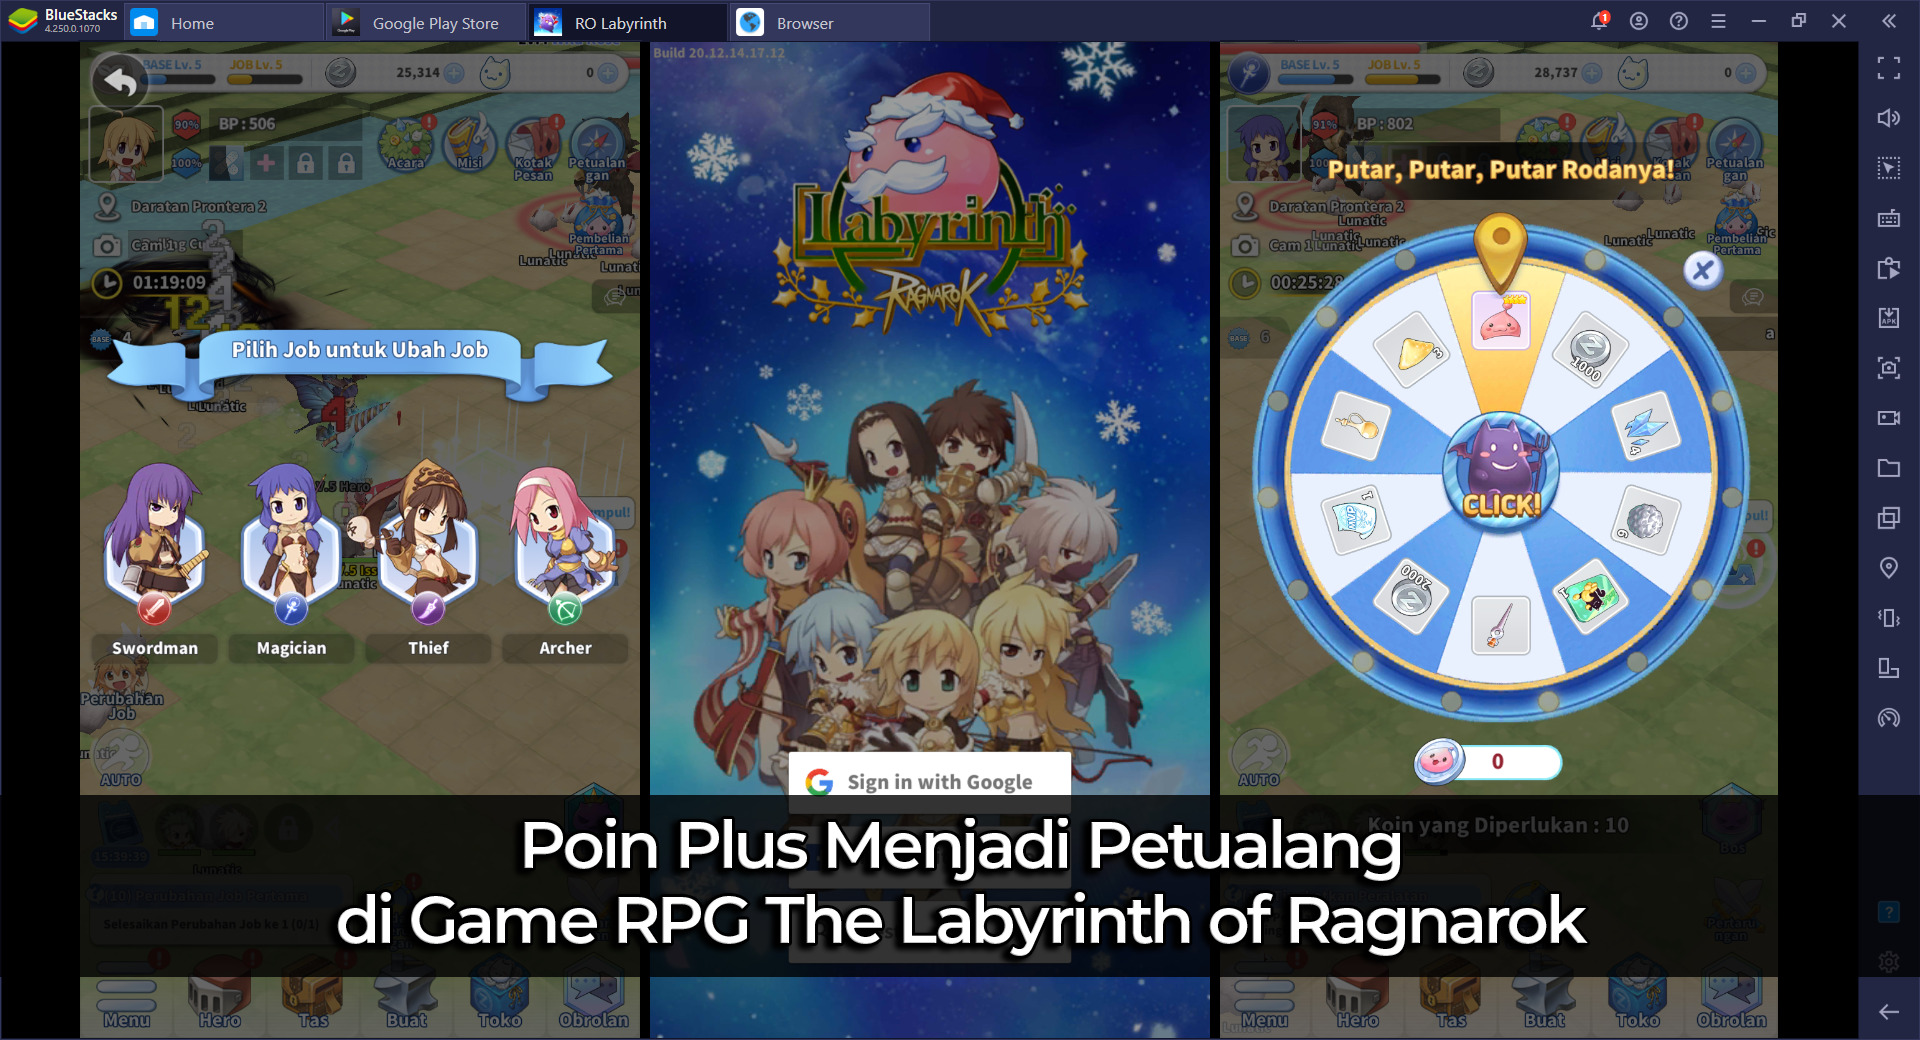 Poin Plus Menjadi Petualang di Game RPG The Labyrinth of Ragnarok